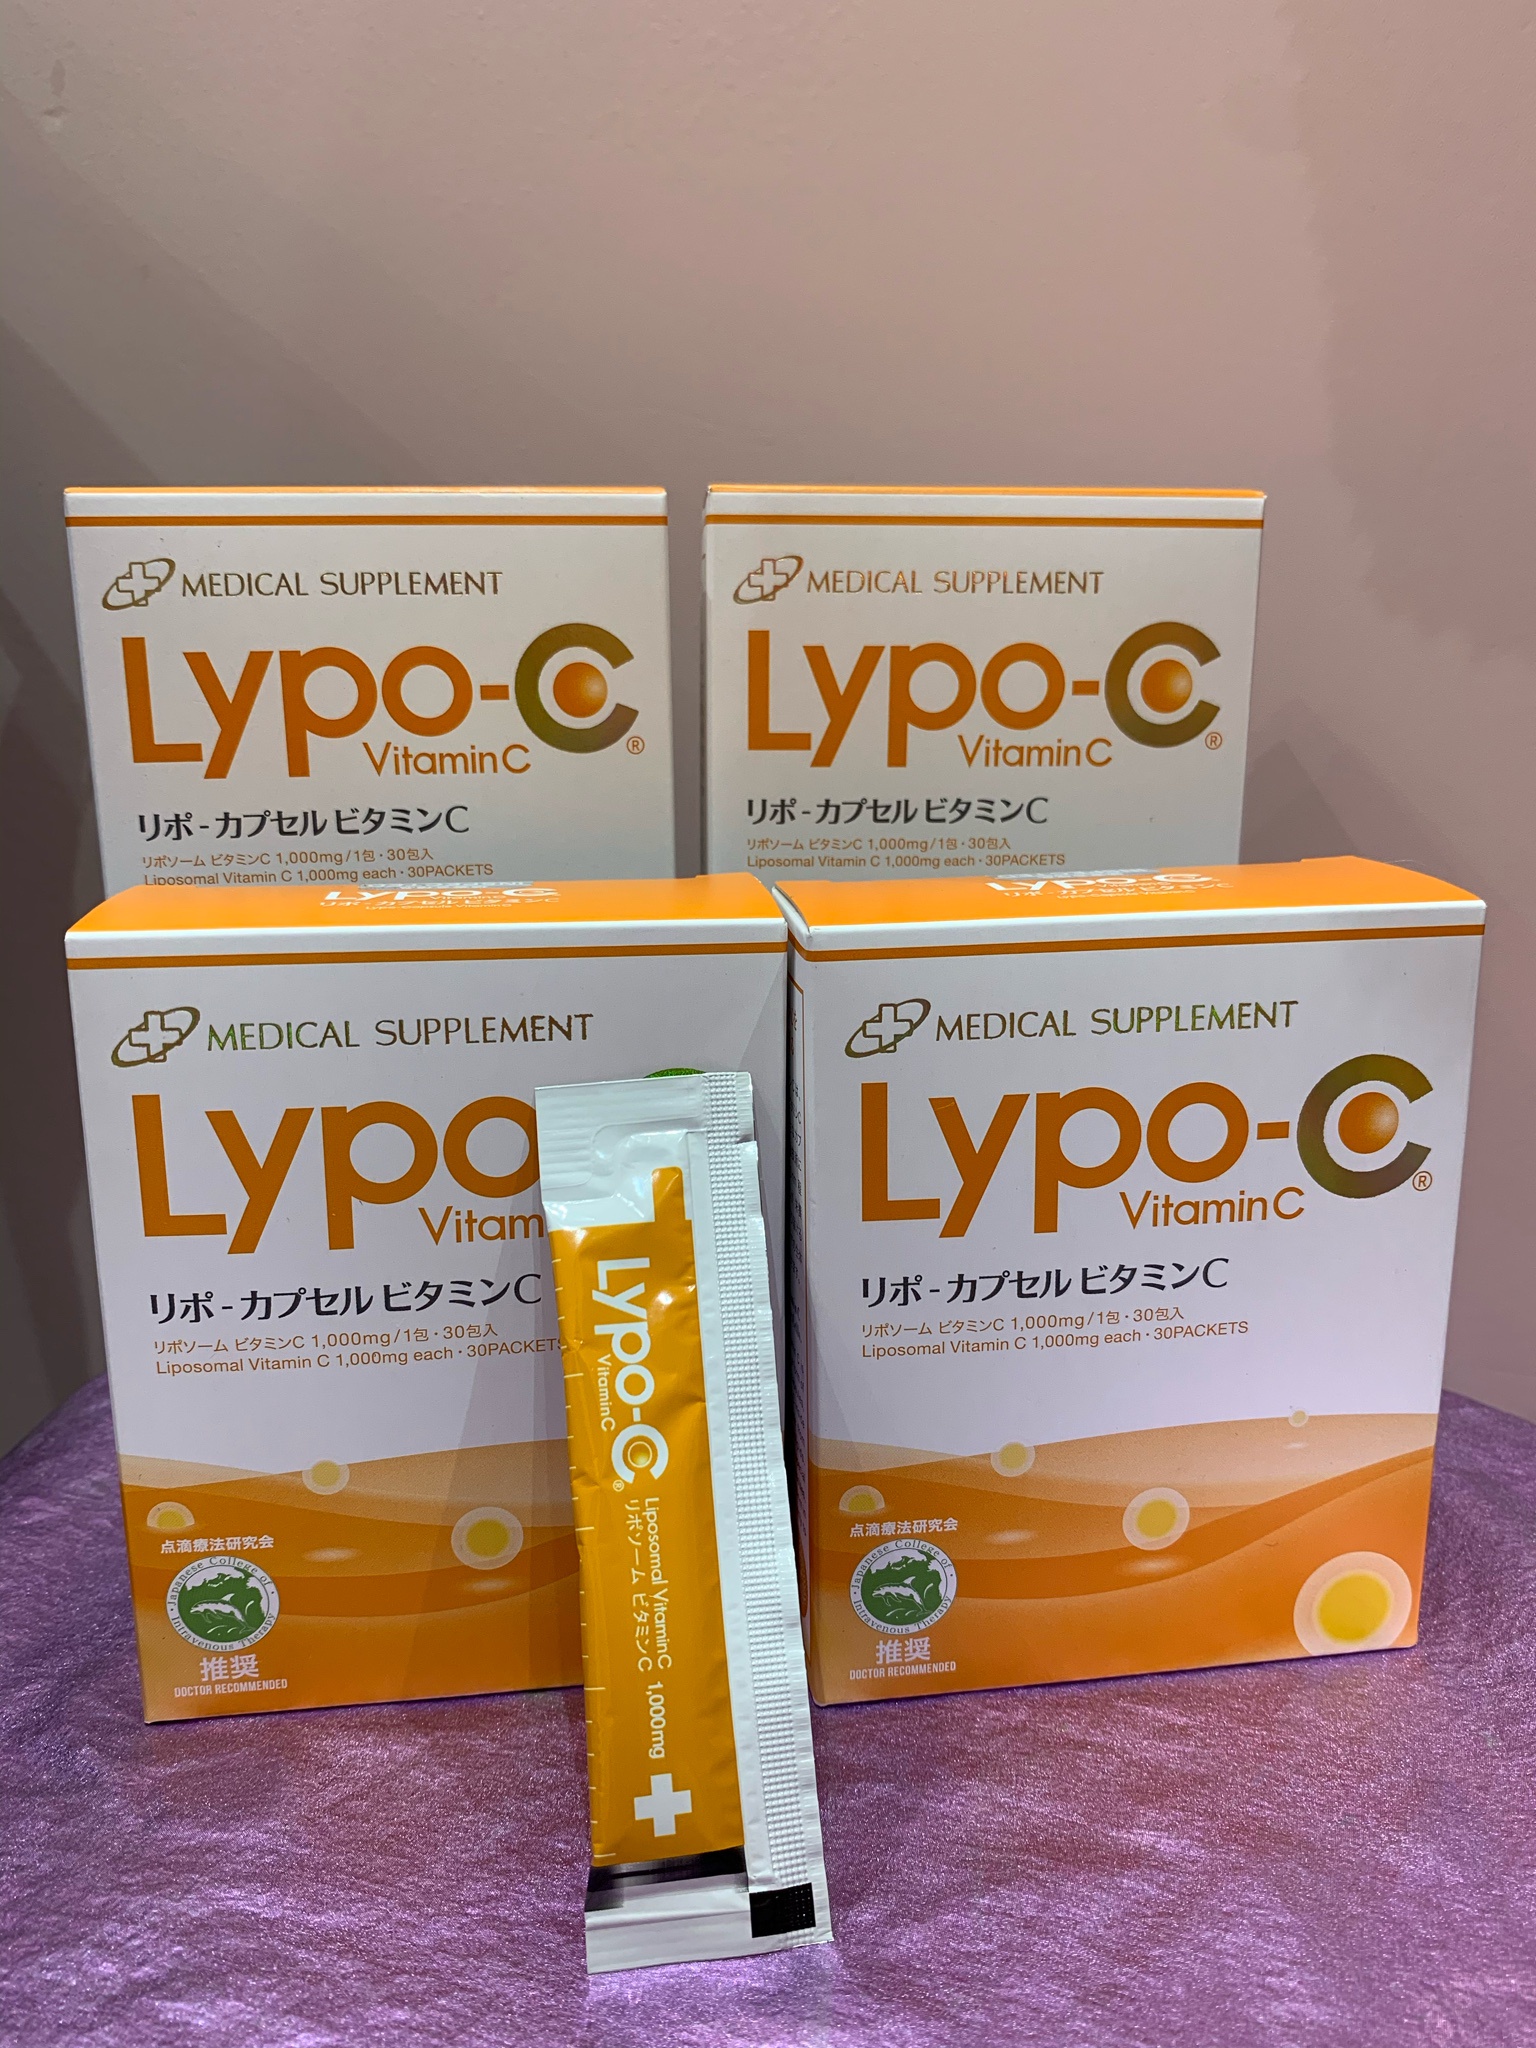 SPIC（スピック） / Lypo-C(リポ・カプセル ビタミンC)の公式商品情報